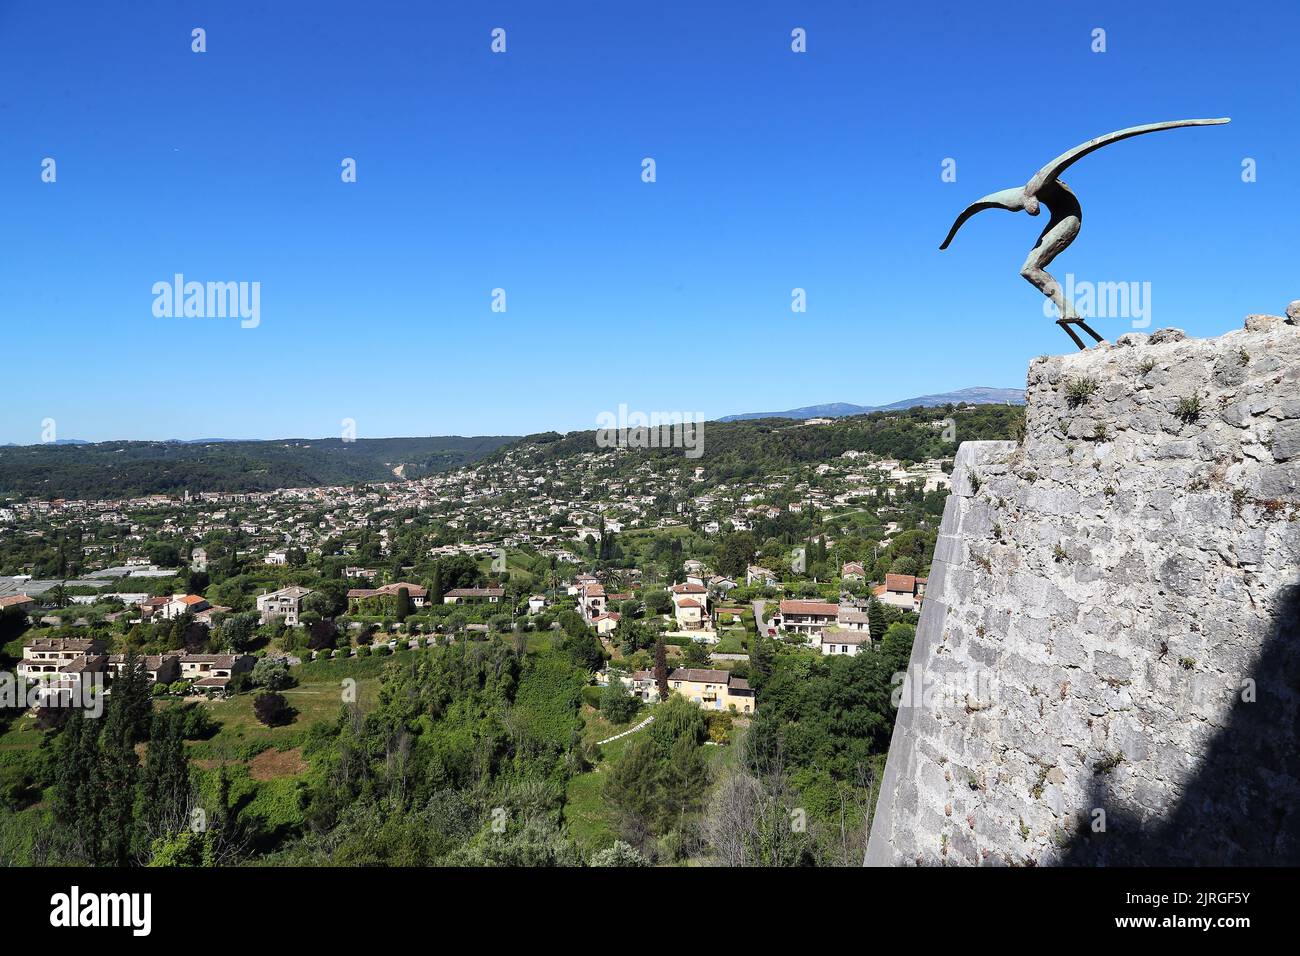 An den Wänden des Dorfes Saint-Paul de Vence und des Provence-Tals, die sich am Fuße der Holzwände erstrecken, befindet sich eine Skulptur. Stockfoto